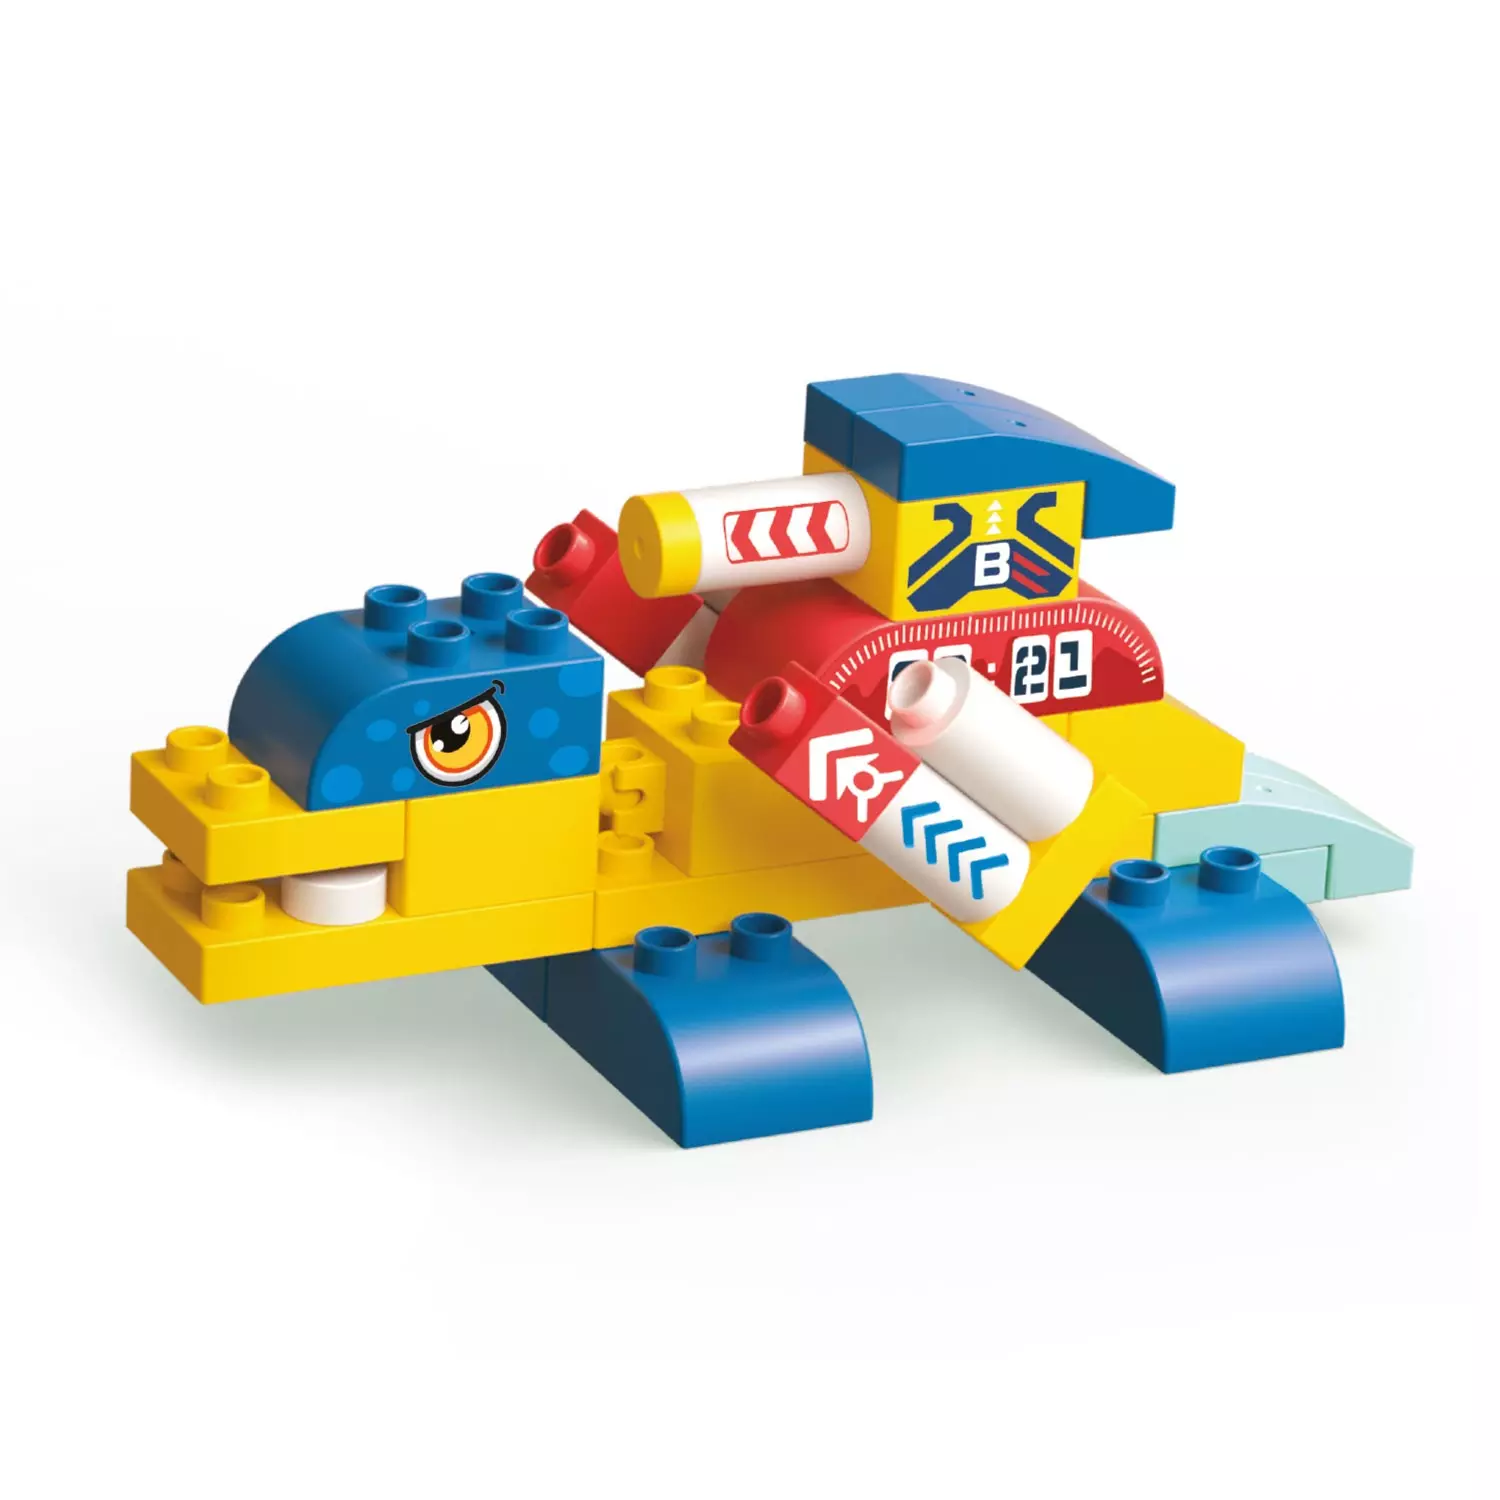 Детский конструктор с крупными блоками Дино-робот 33 детали 1/96 Funky toys FT0822561